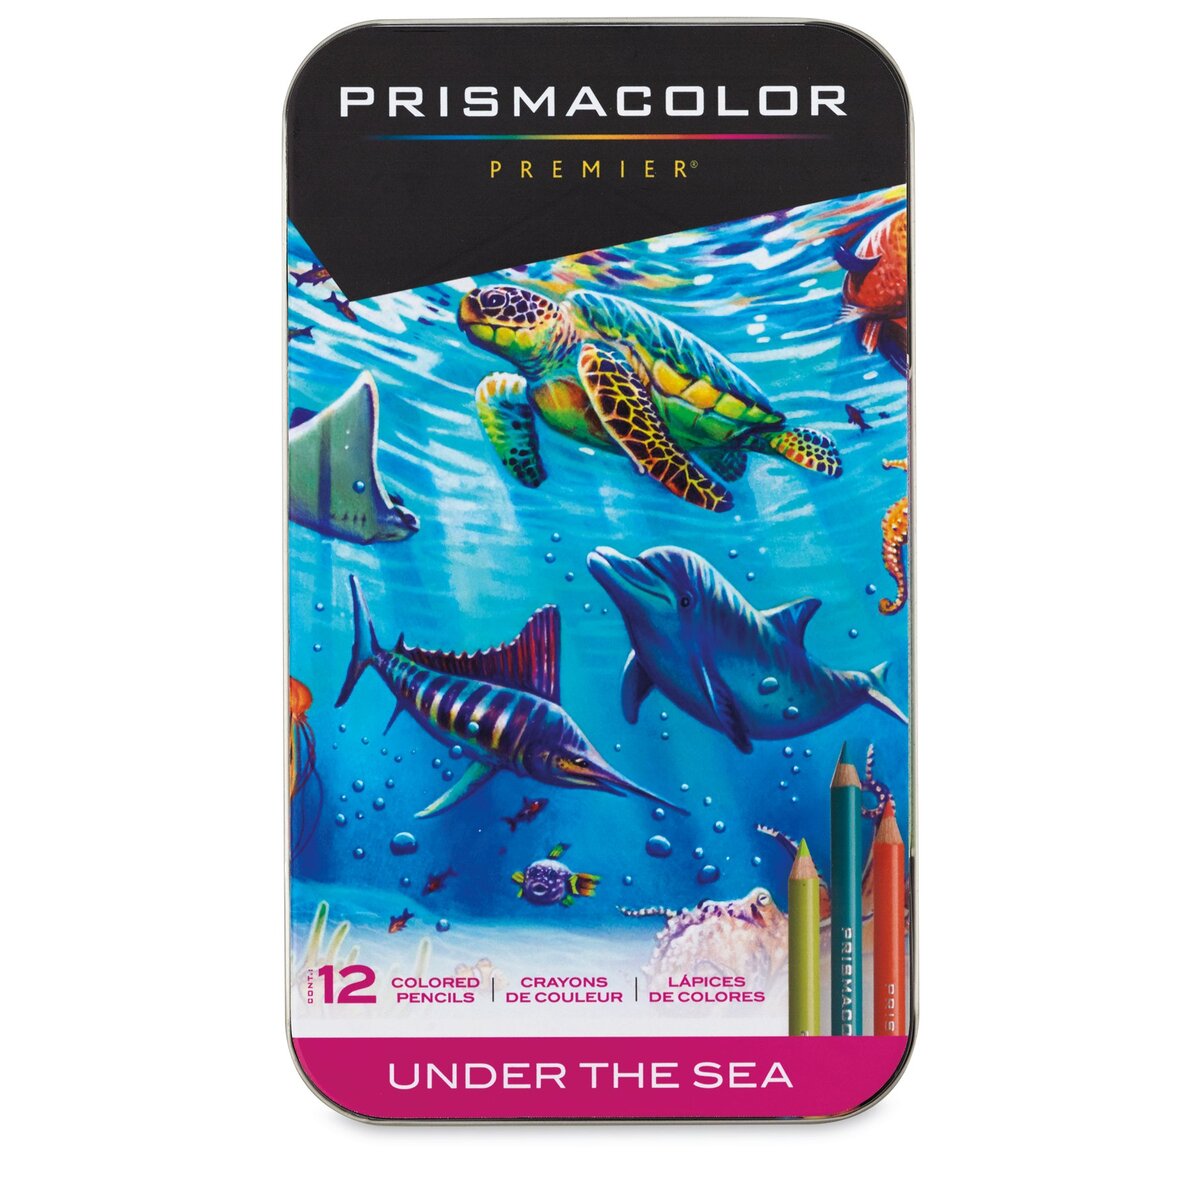 Prismacolor Premier Colorless Blender Pencil - 12 Count 